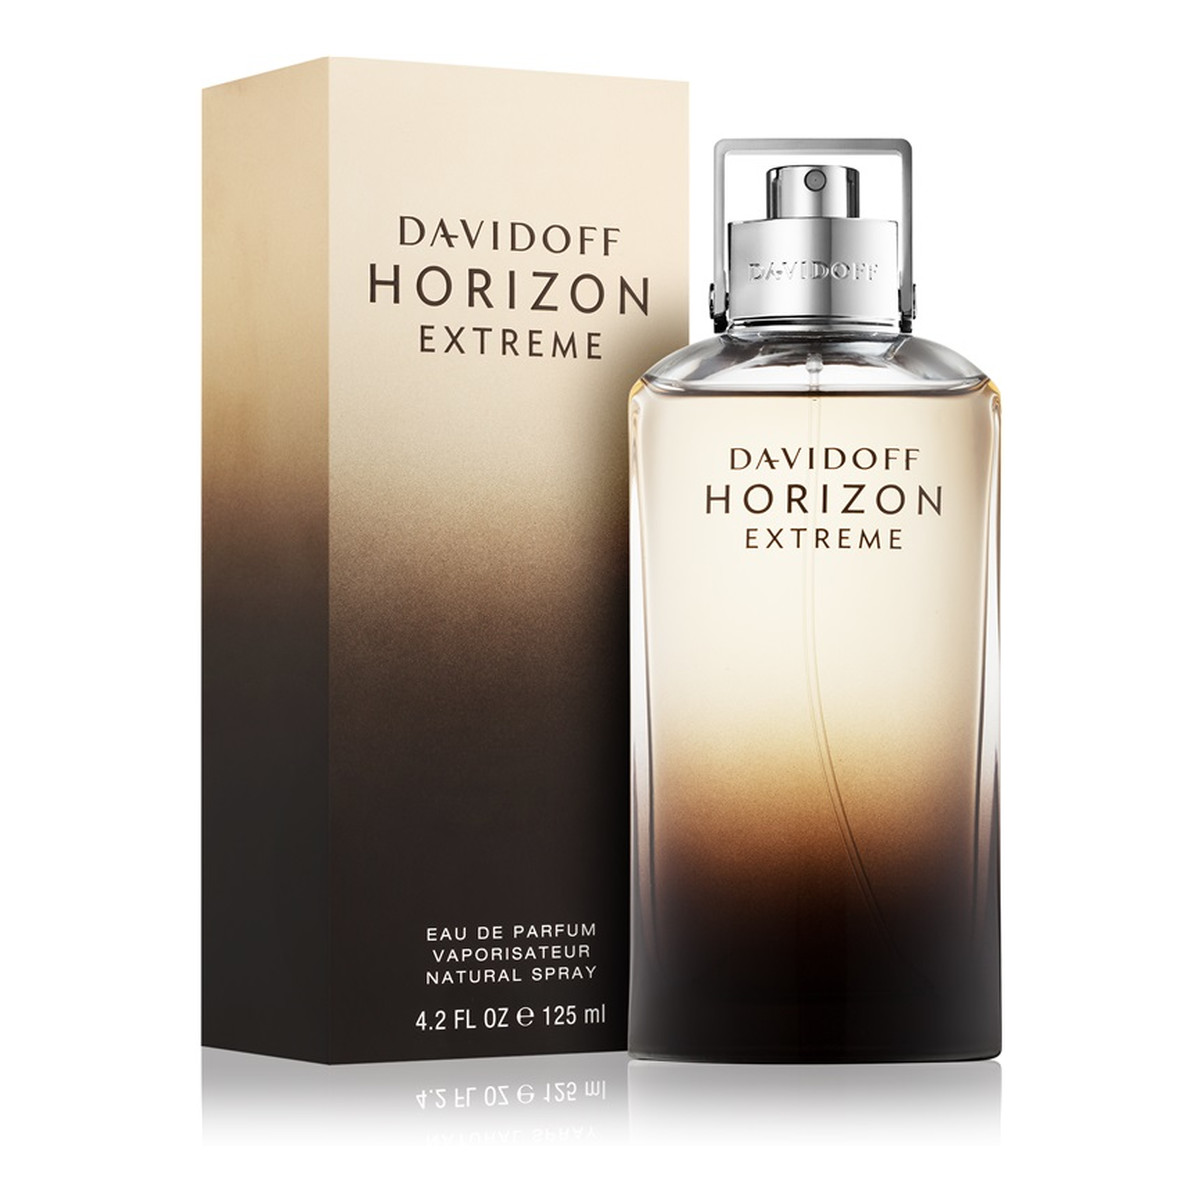 Davidoff Horizon Extreme woda perfumowana dla mężczyzn 125ml